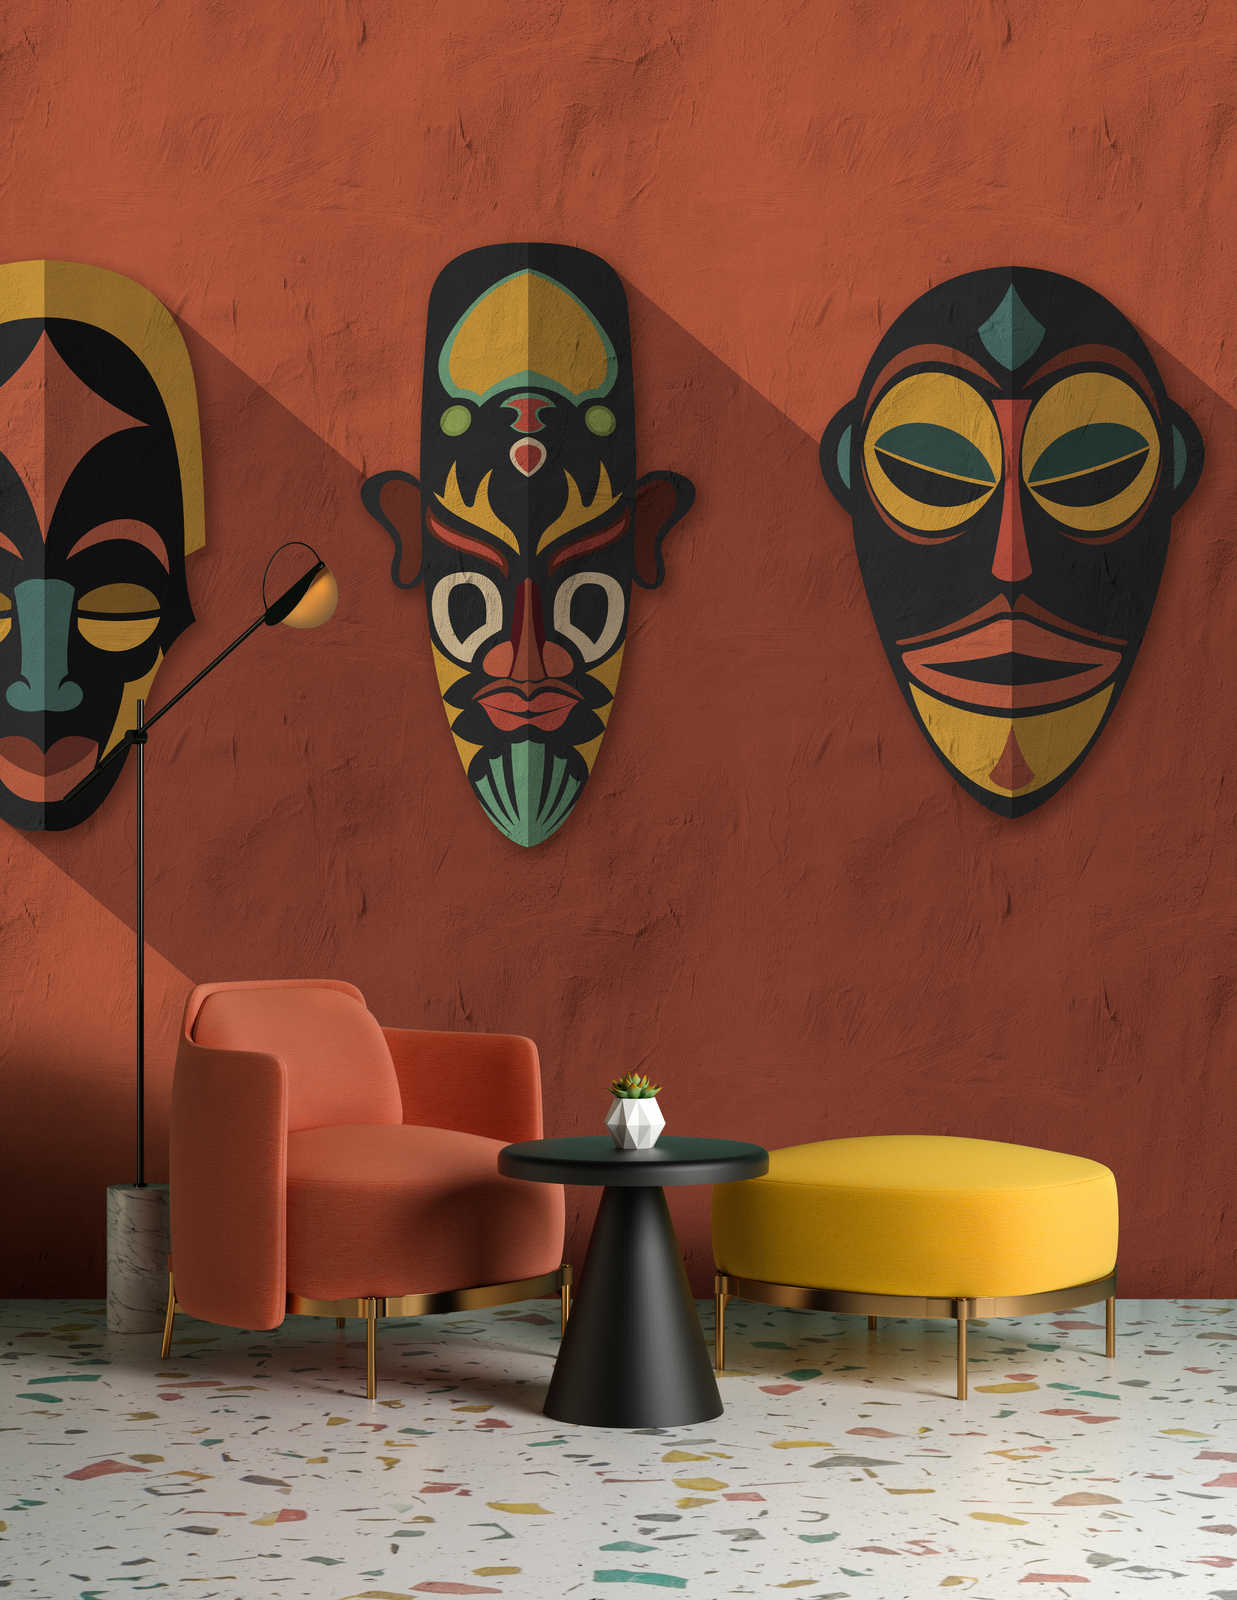             Zulu 2 - Fotomurali in terracotta arancione, Africa Masks Zulu Design
        